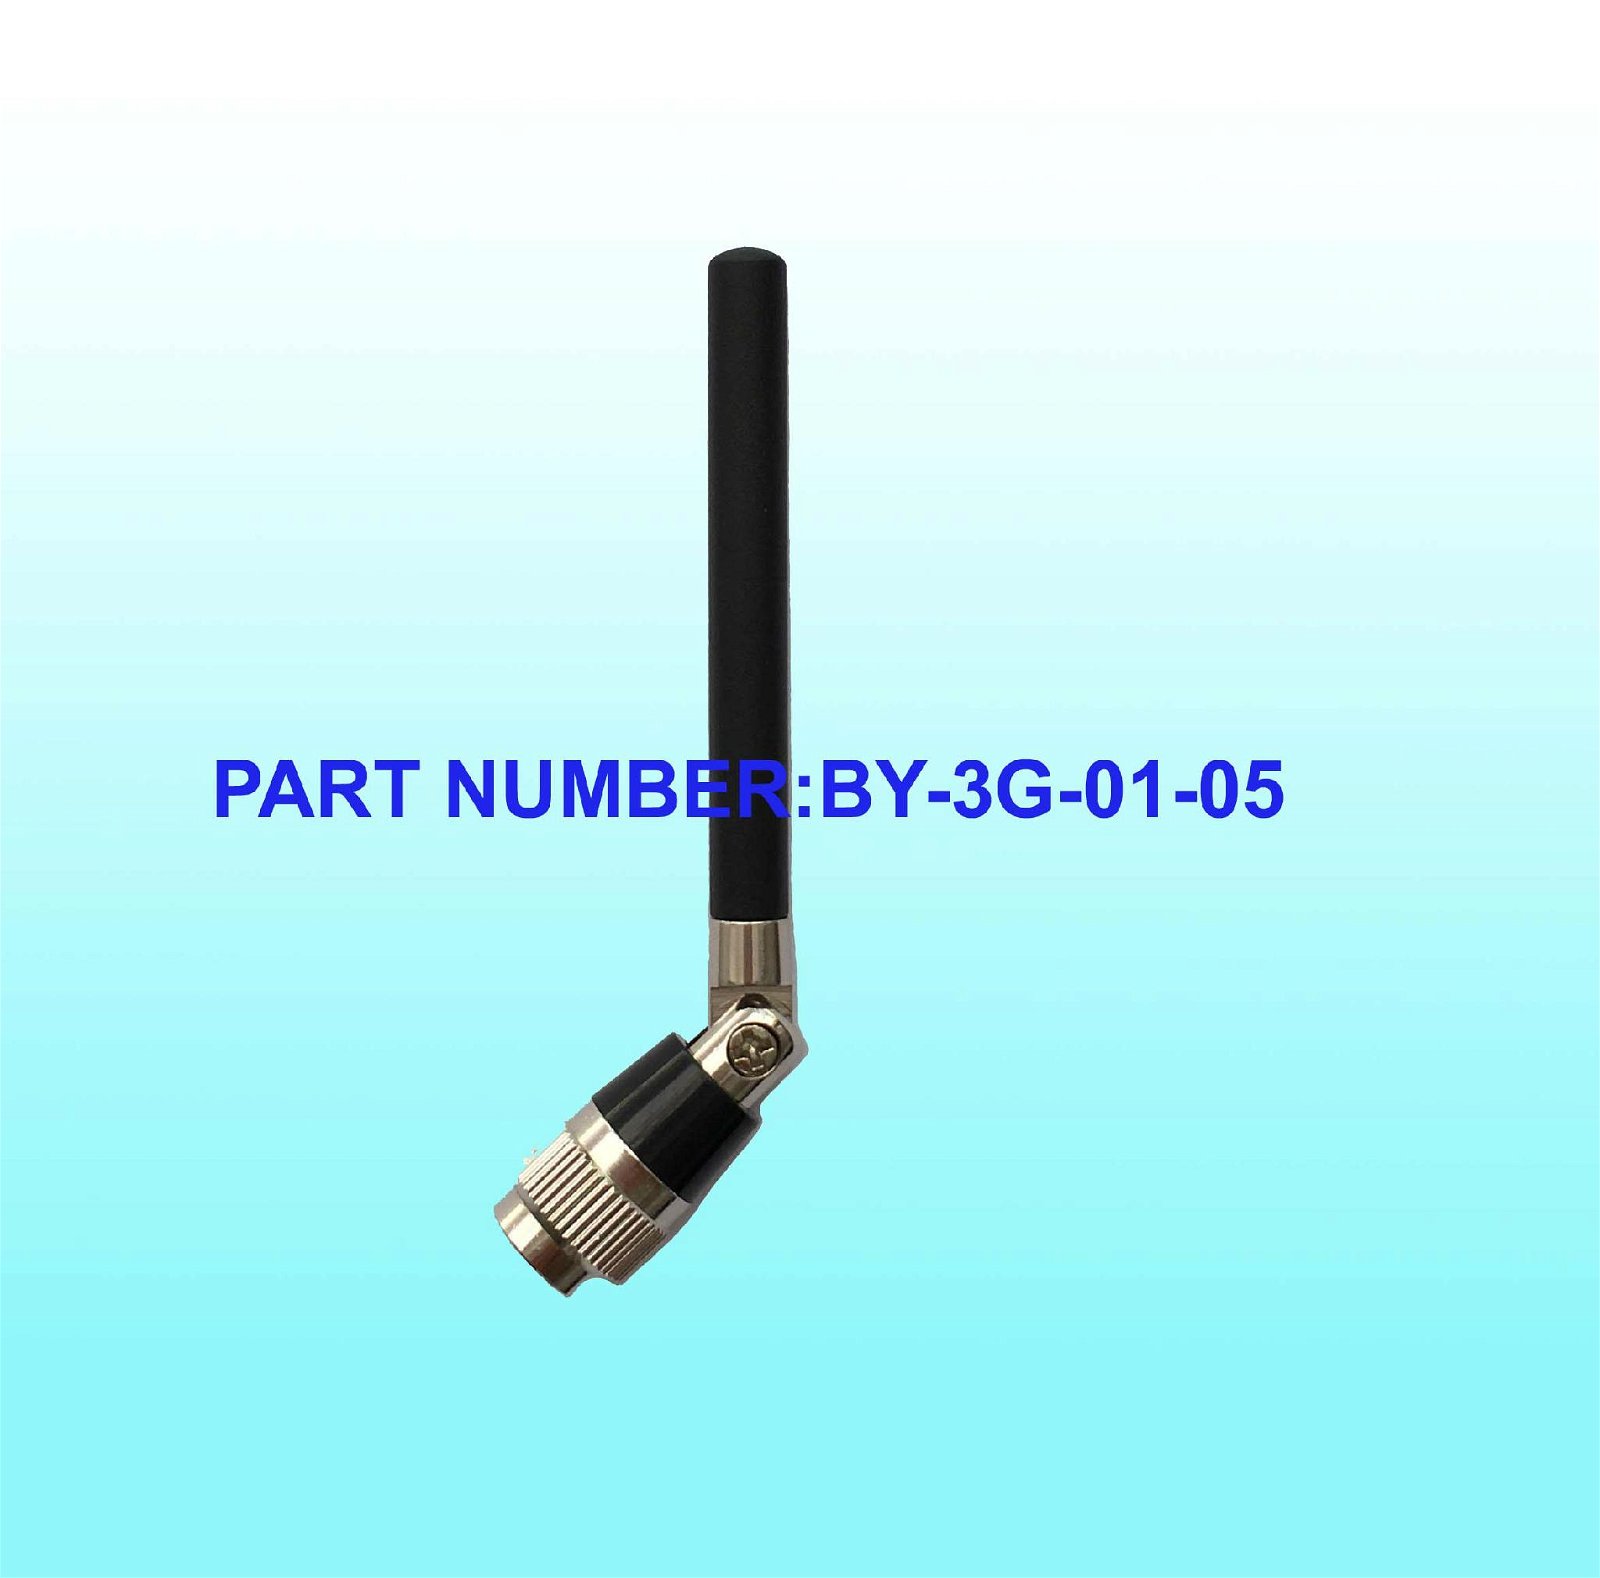 3G rubber Antenna, Antenna Length 82mm